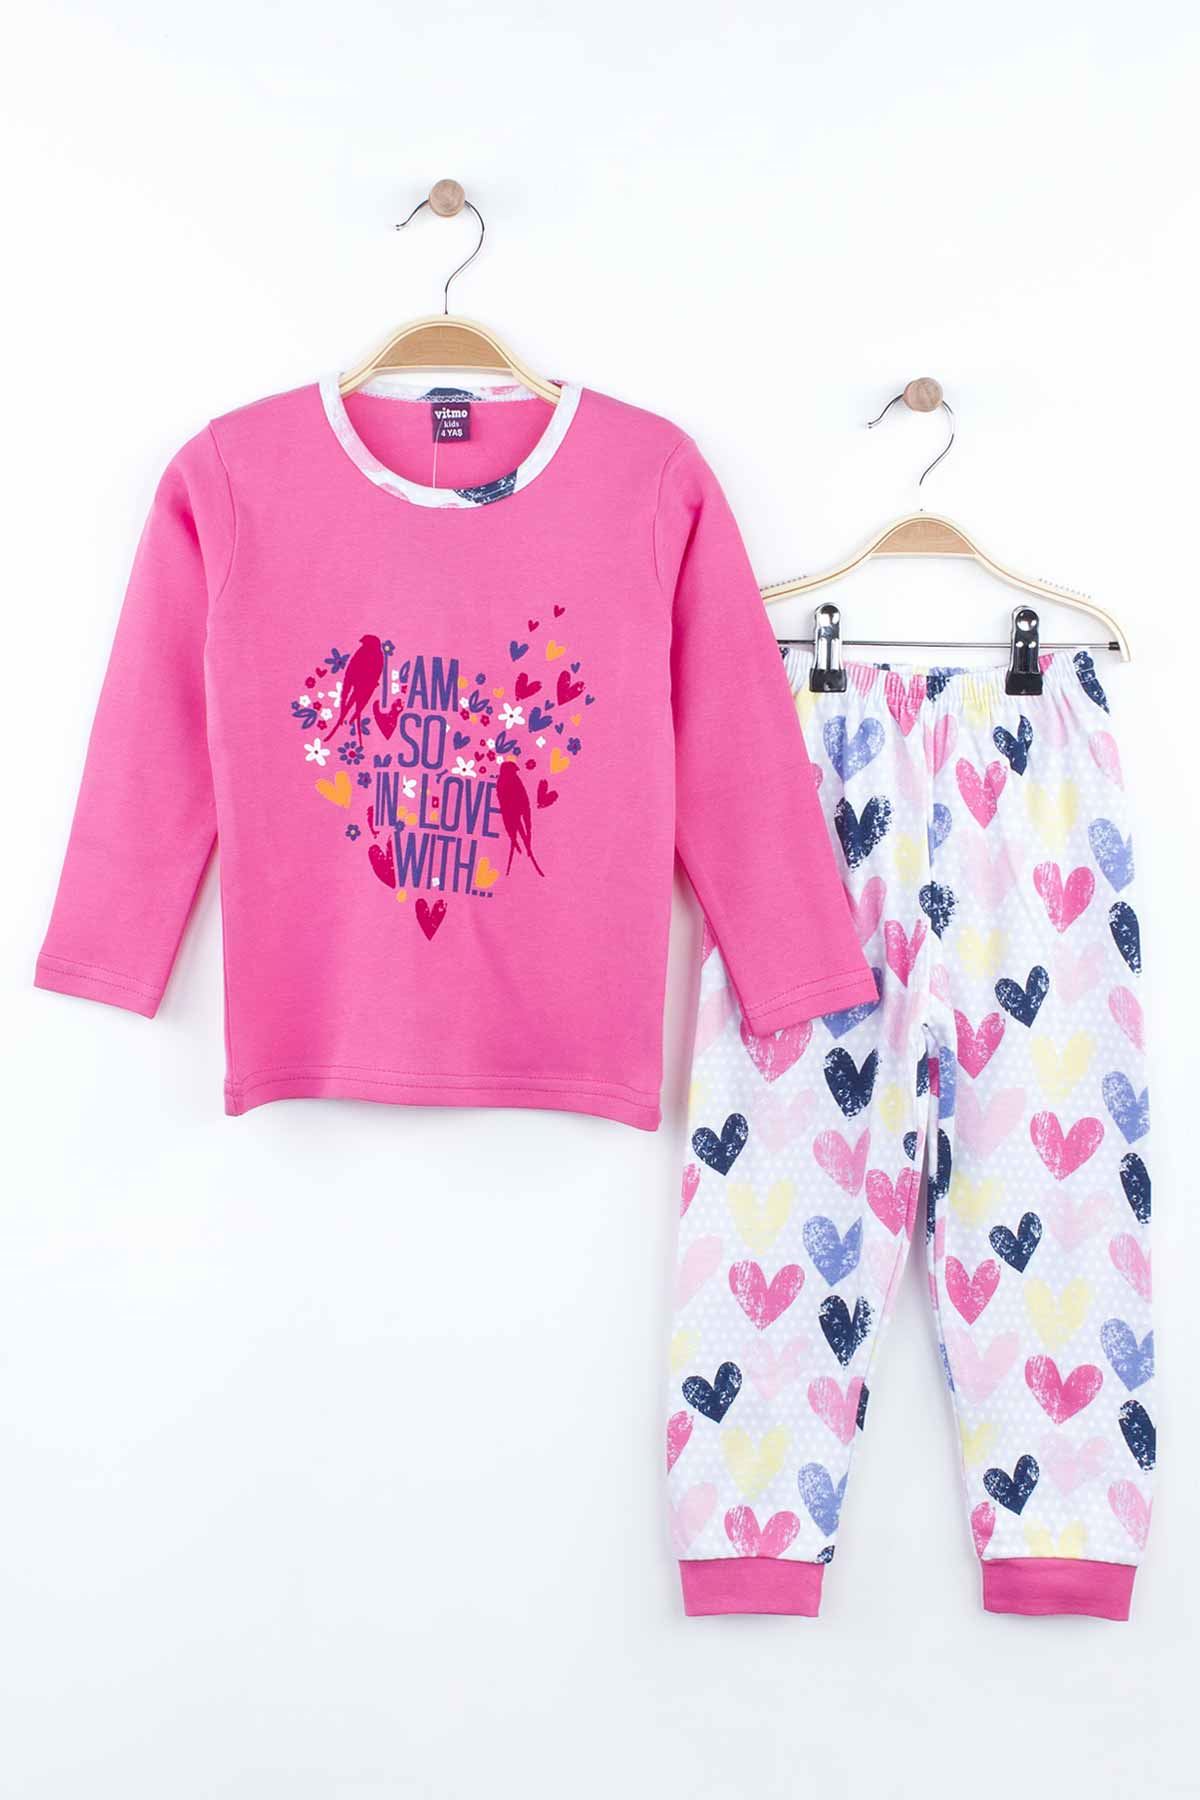 Fuchsia Girls Pajamas Set Bottom Pajamas Top Pajamas Kids Daily Wear Homewear Cotton Comfortable Children Pajamas Sets Model